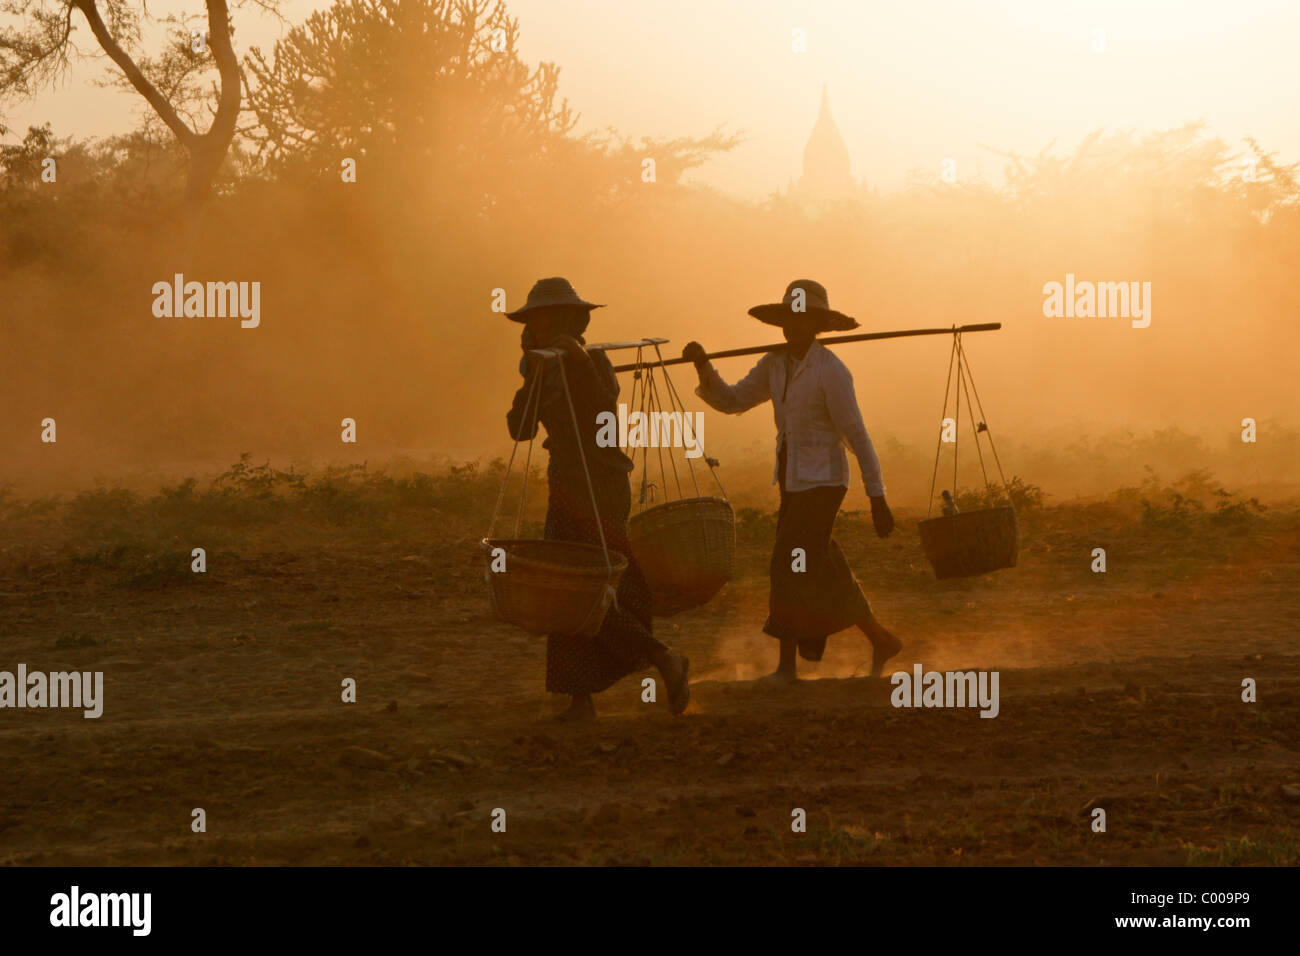 Las mujeres de las zonas rurales que llevan cestas al atardecer, Bagan (pagano), Myanmar (Birmania) Foto de stock